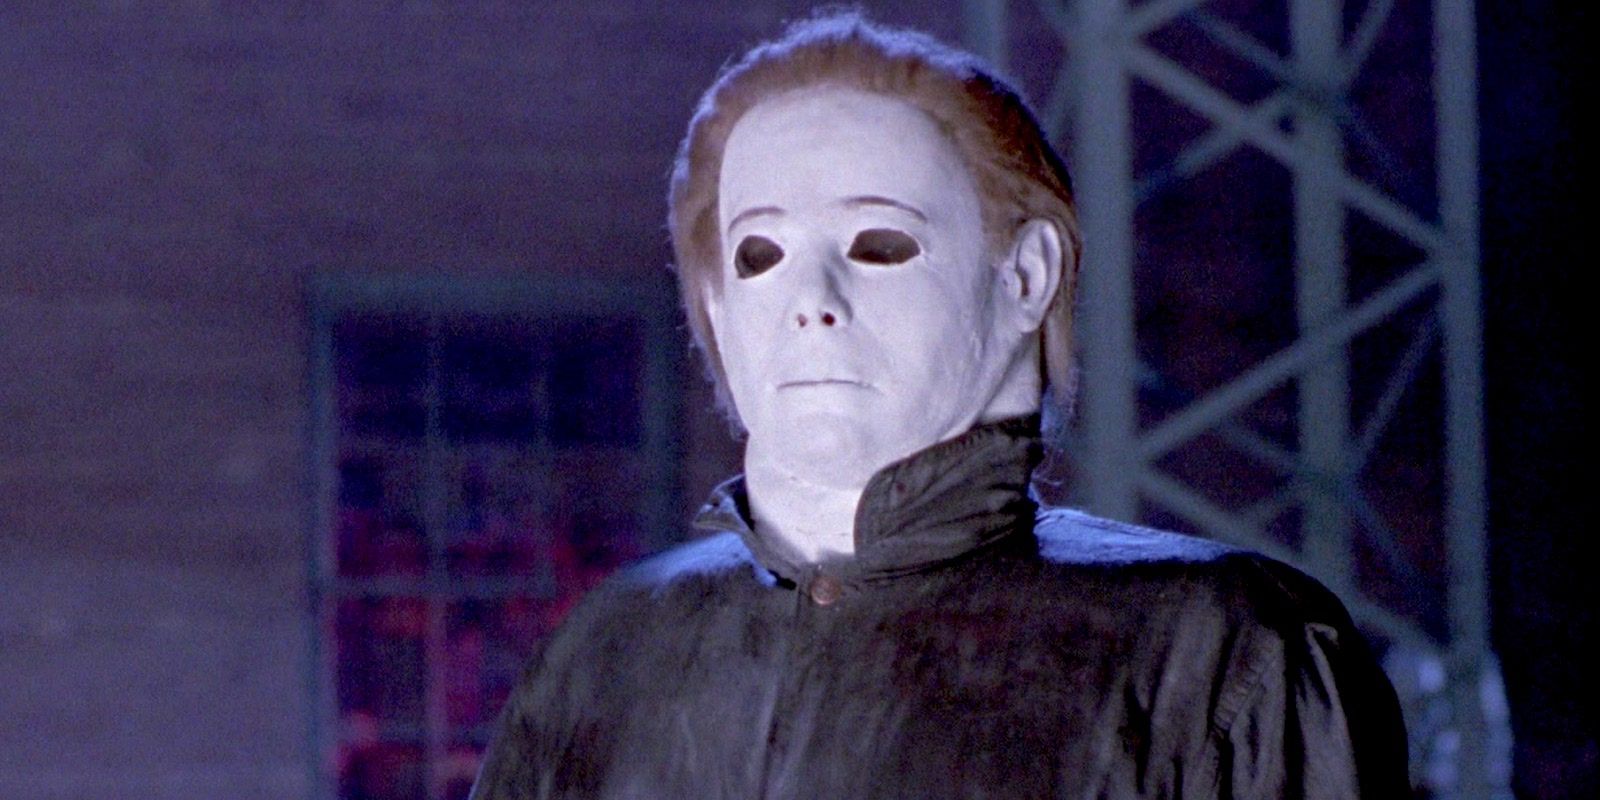 George P Wilbur as Michael Myers in Halloween 4